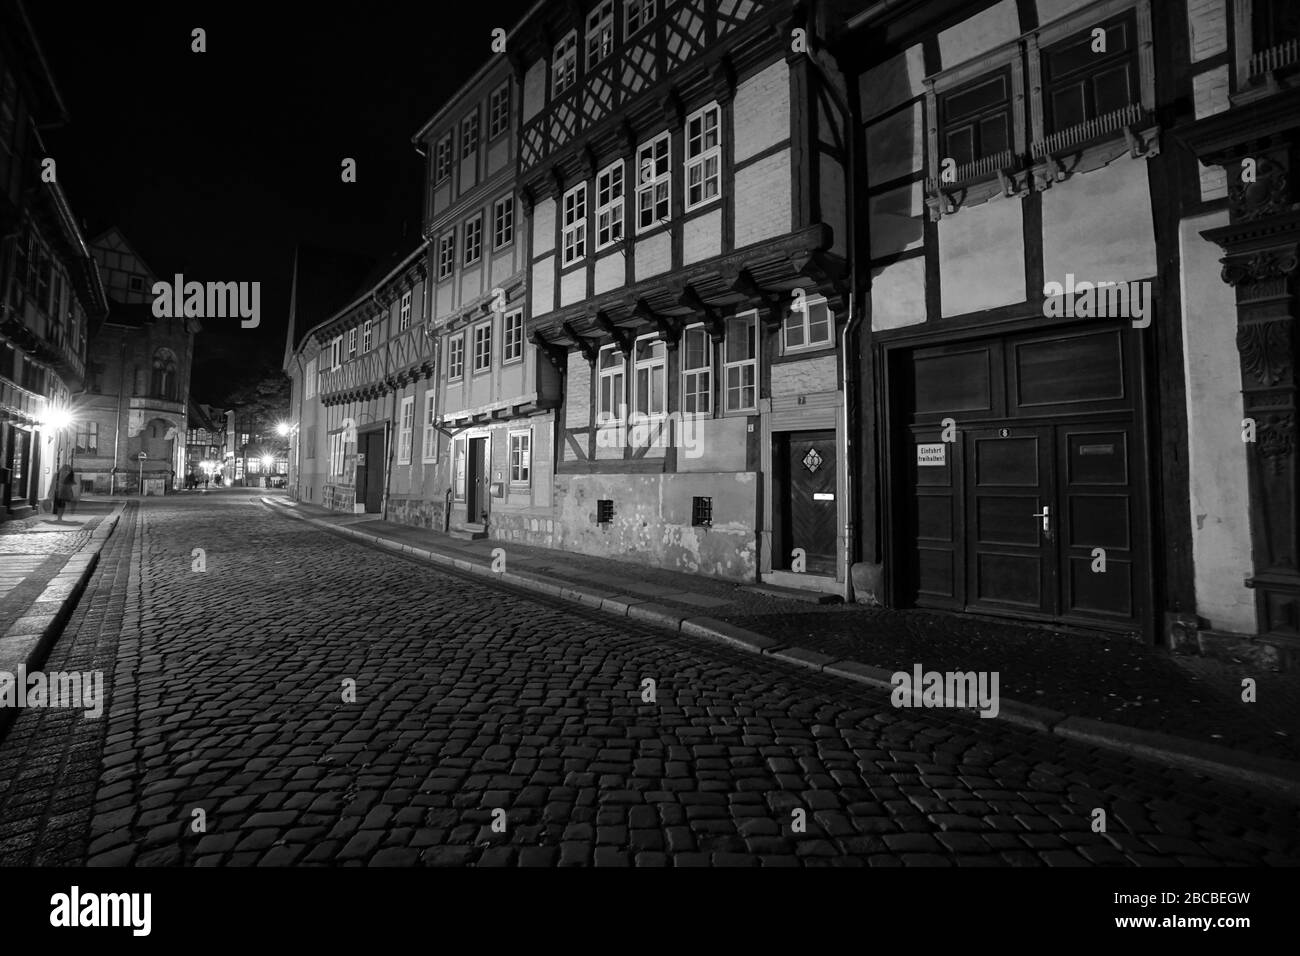 Imagen dramática en blanco y negro de un camino adoquinado entre casas de entramado de madera por la noche en Quedlinburg, Patrimonio de la Humanidad de la UNESCO Foto de stock